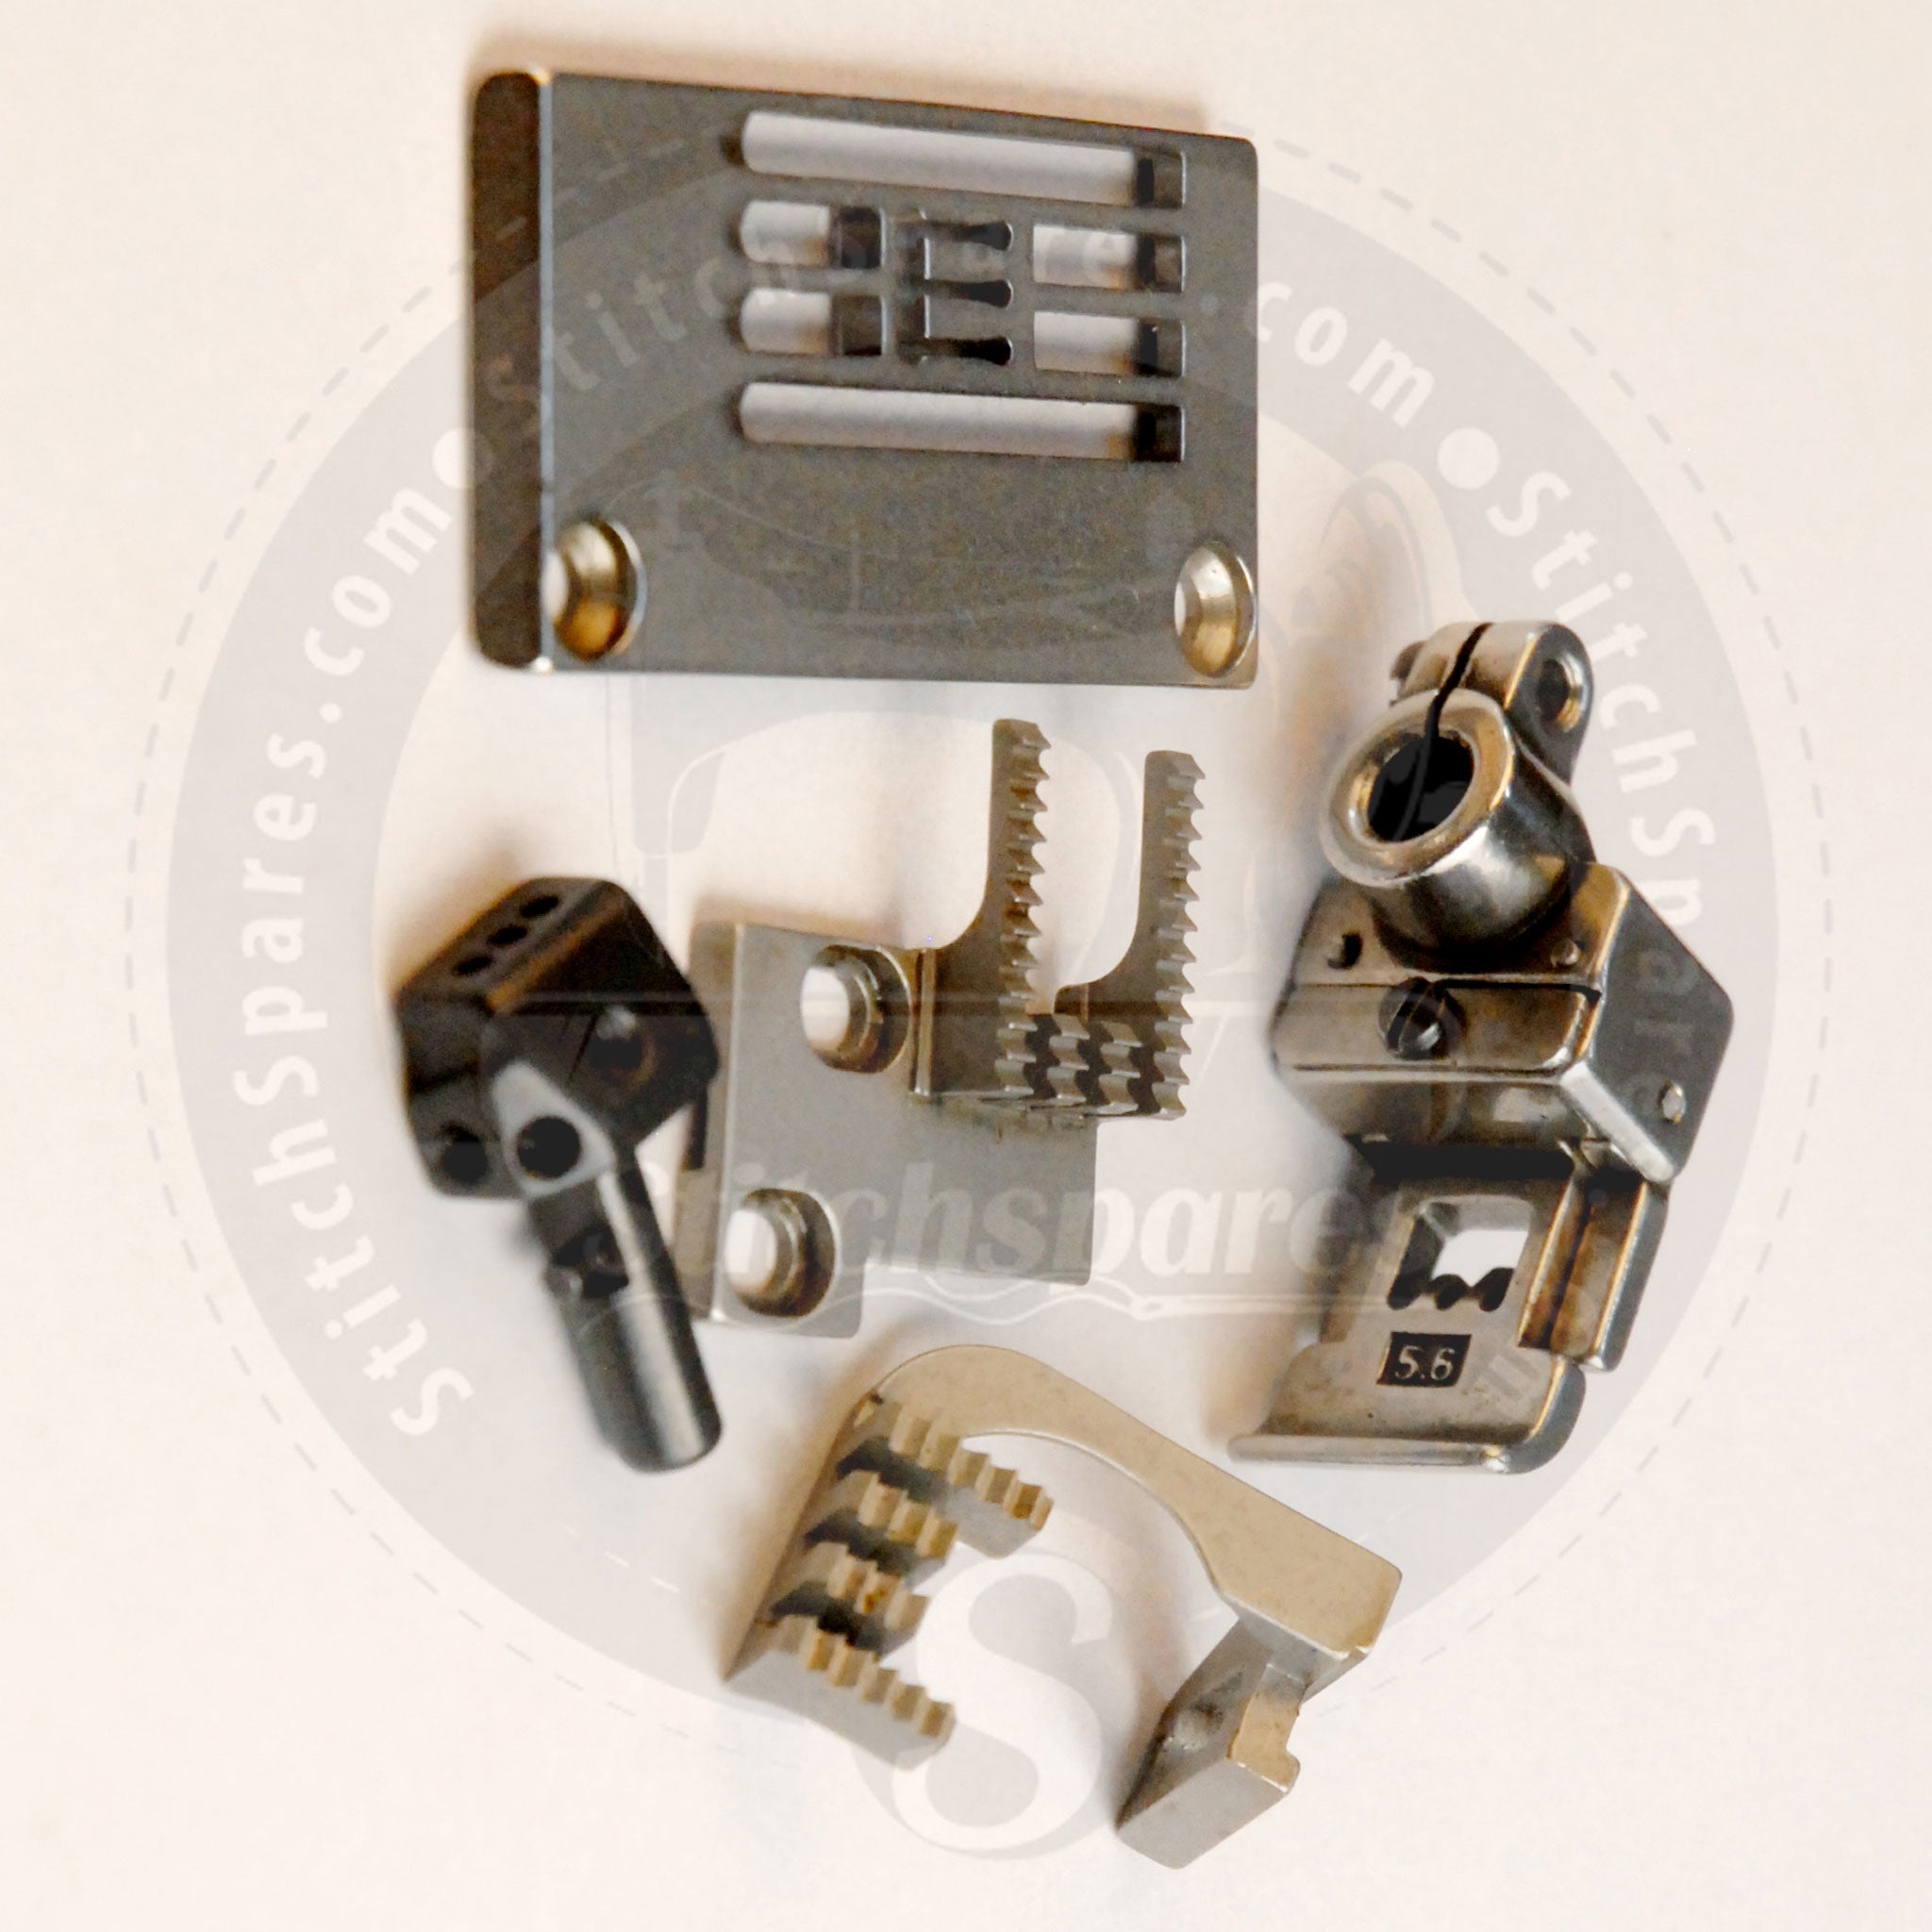 Juego de calibres 14-854 para máquina de coser industrial Kansai Special Flatlock (interbloqueo) DVK1703D V7003D DWK1803D W8003D